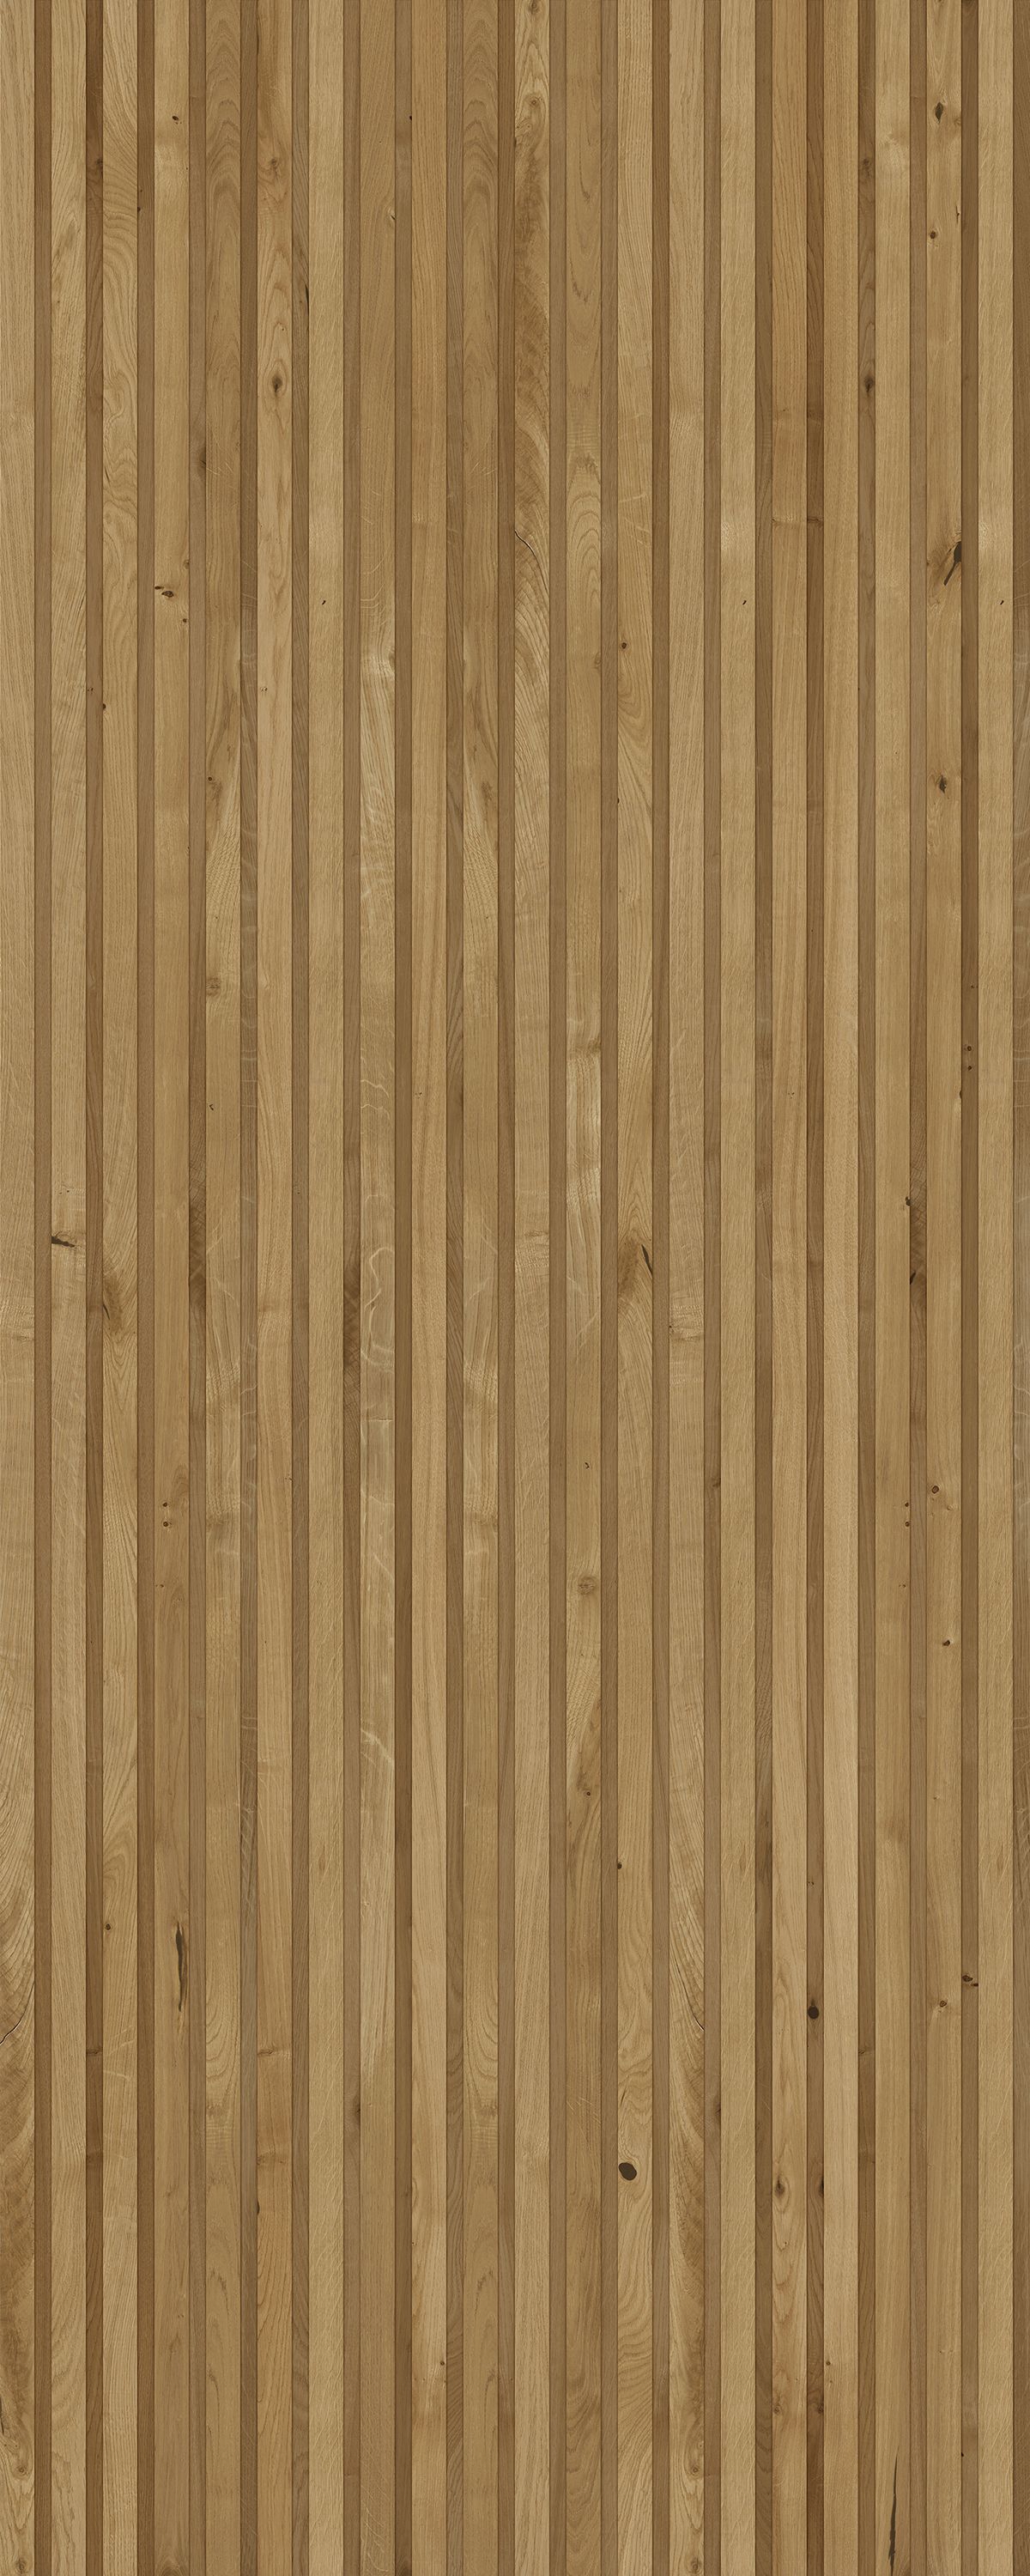 Интерьерная панель Wood Rail MG-3.7.1 Golden глянцевый